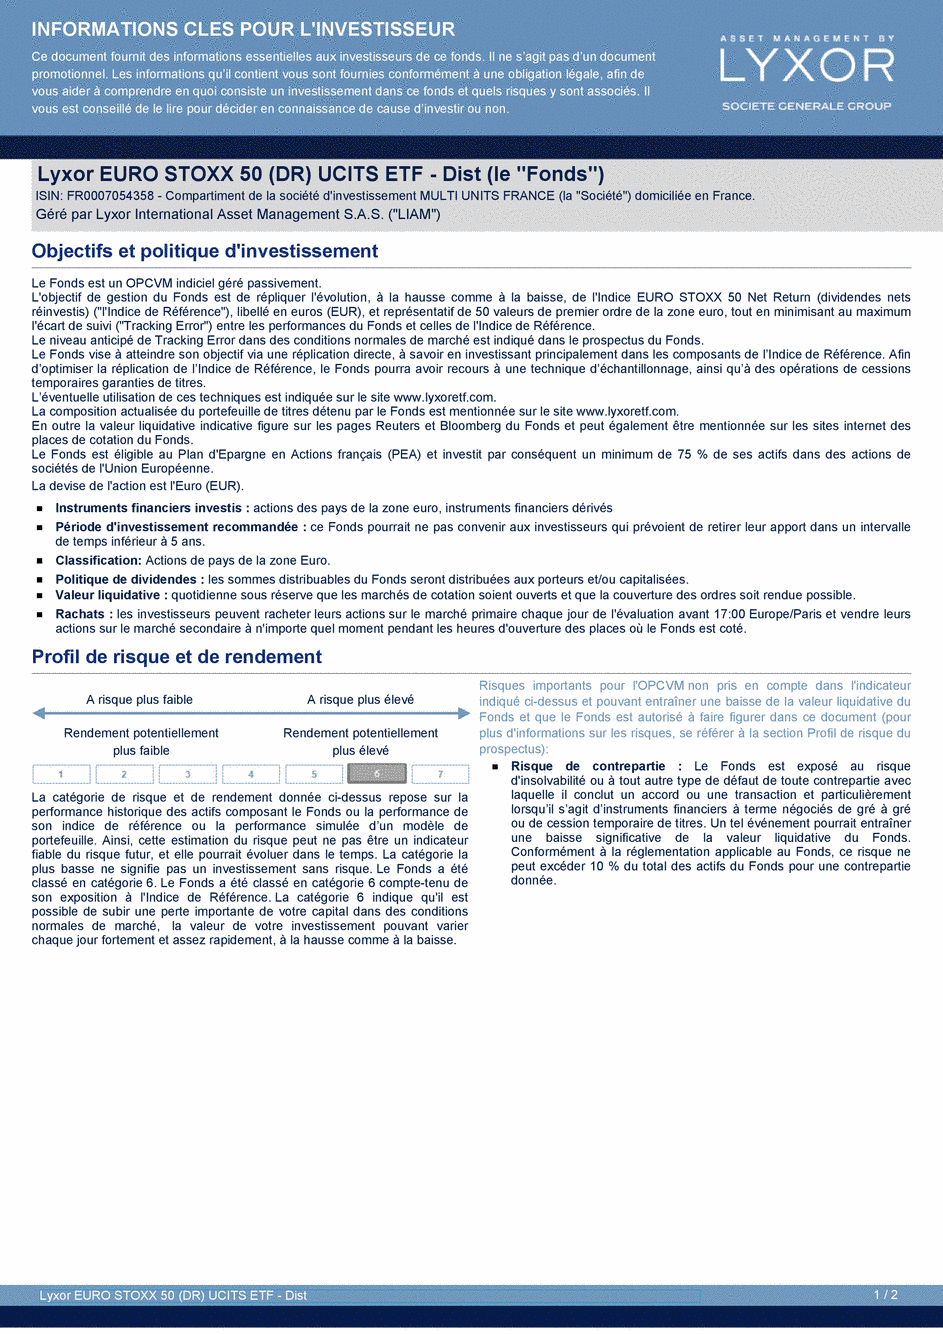 DICI Lyxor EURO STOXX 50 (DR) UCITS ETF - Acc - 19/02/2020 - Français